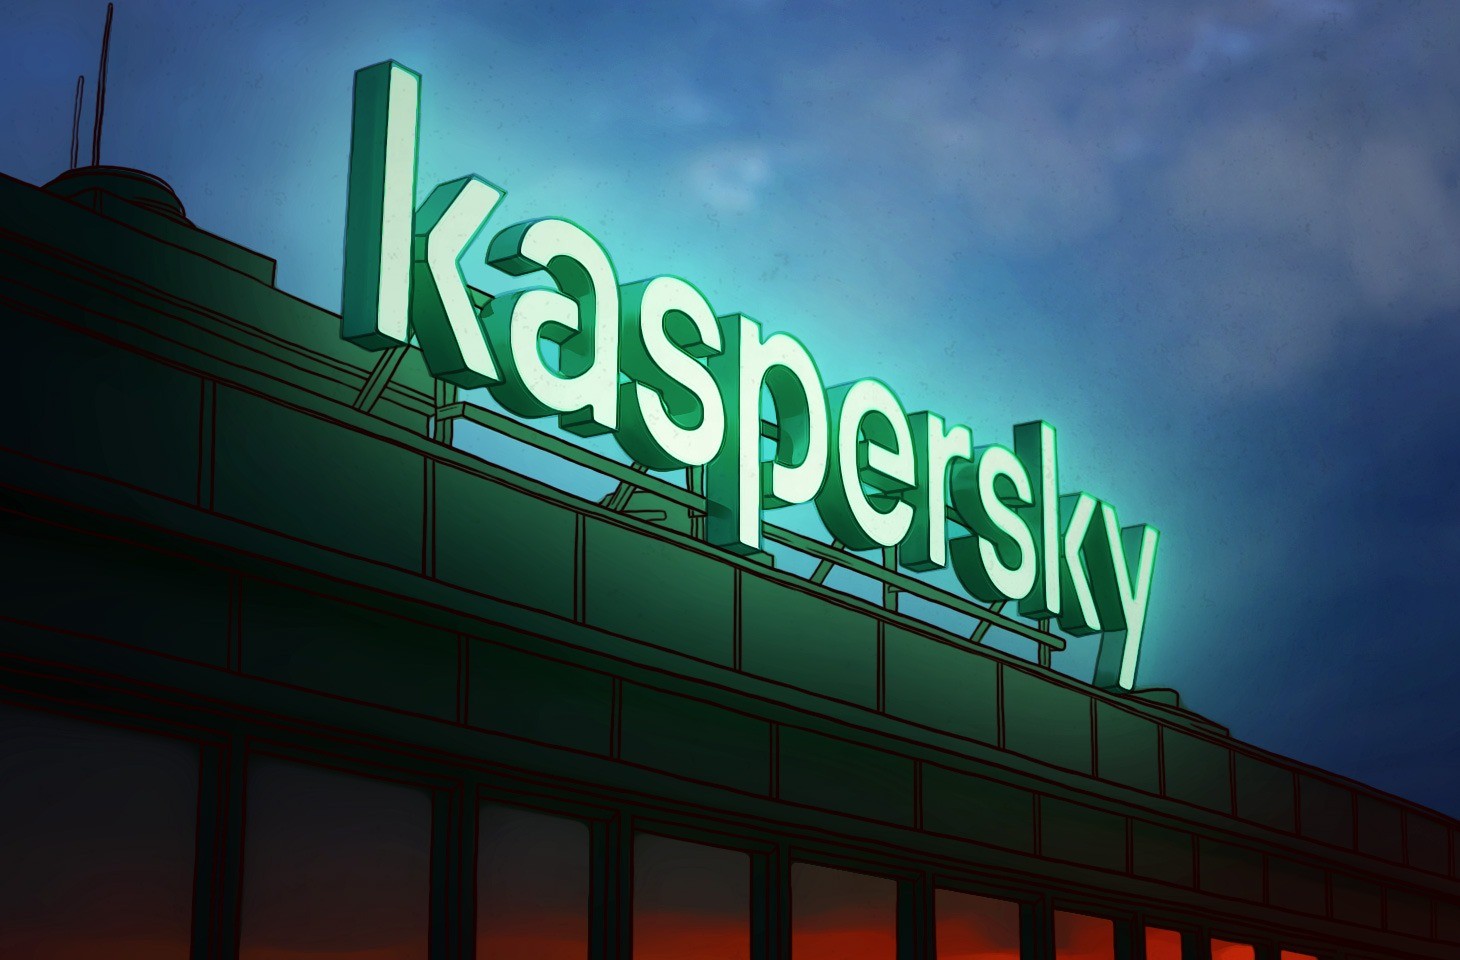 Kaspersky tại Việt Nam 2 năm liên tiếp lập kỷ lục với mức tăng trưởng trên 100%